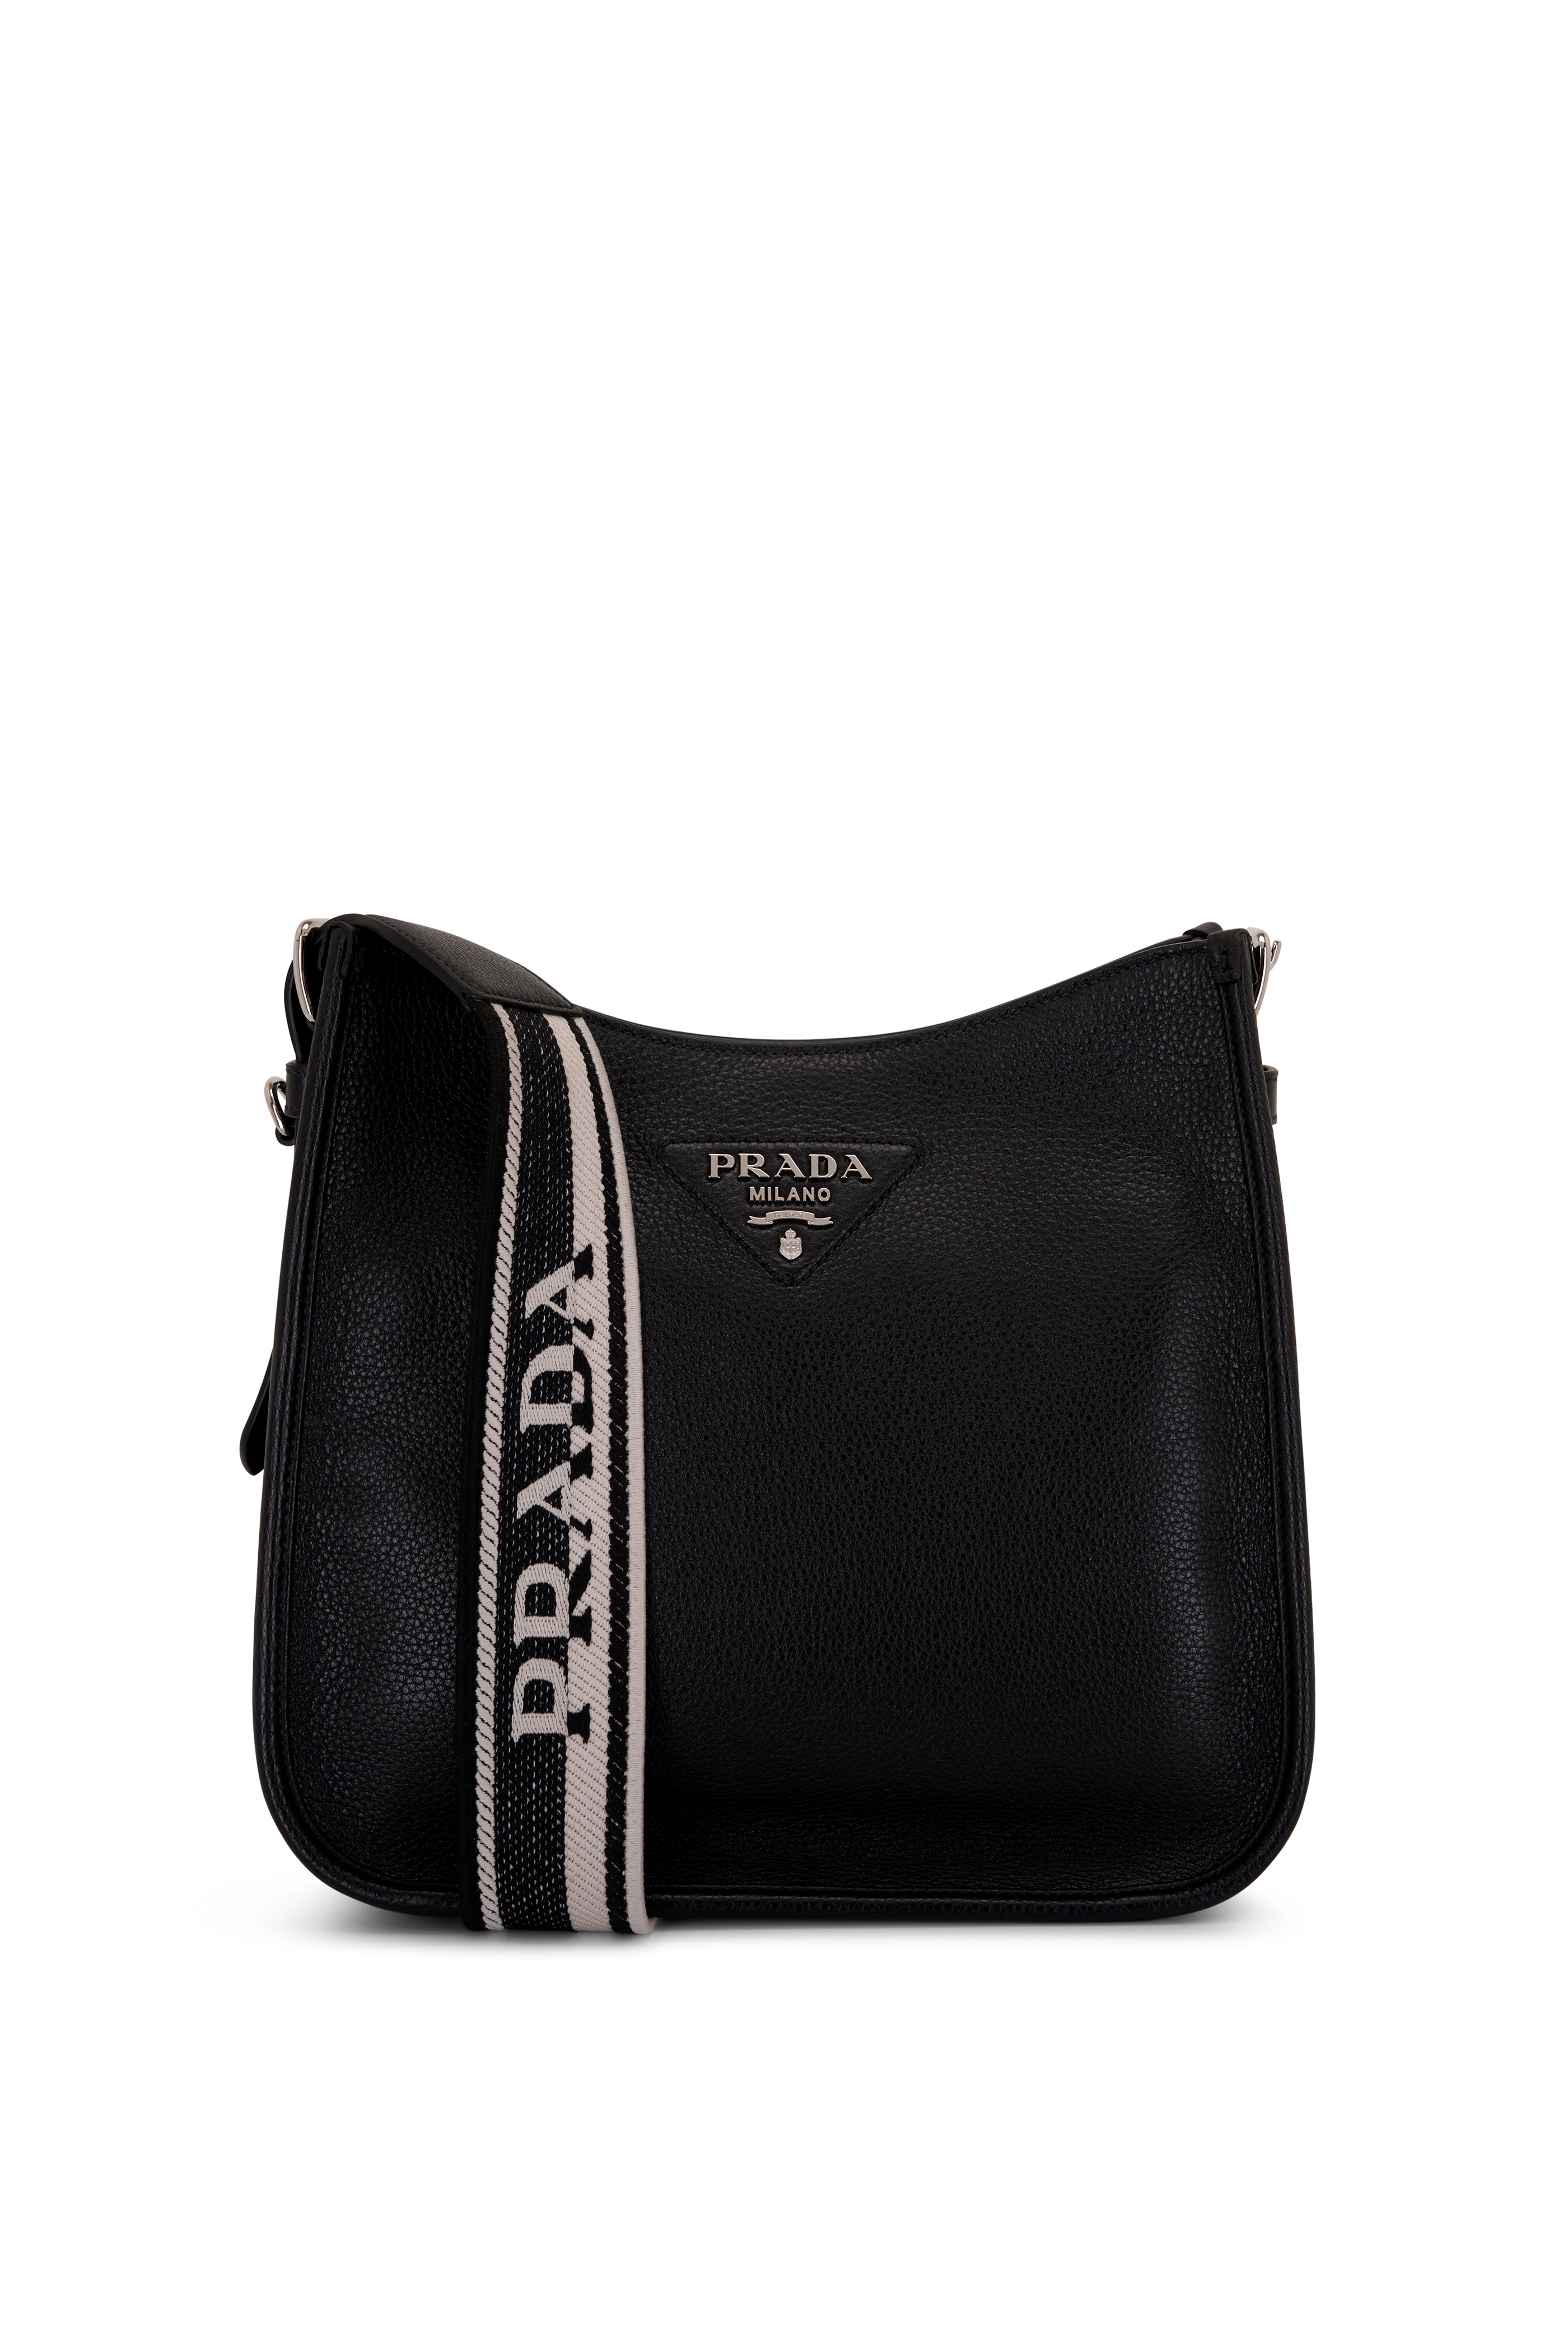 PRADA Saffiano Chain Shoulder Bag White Black 1238537